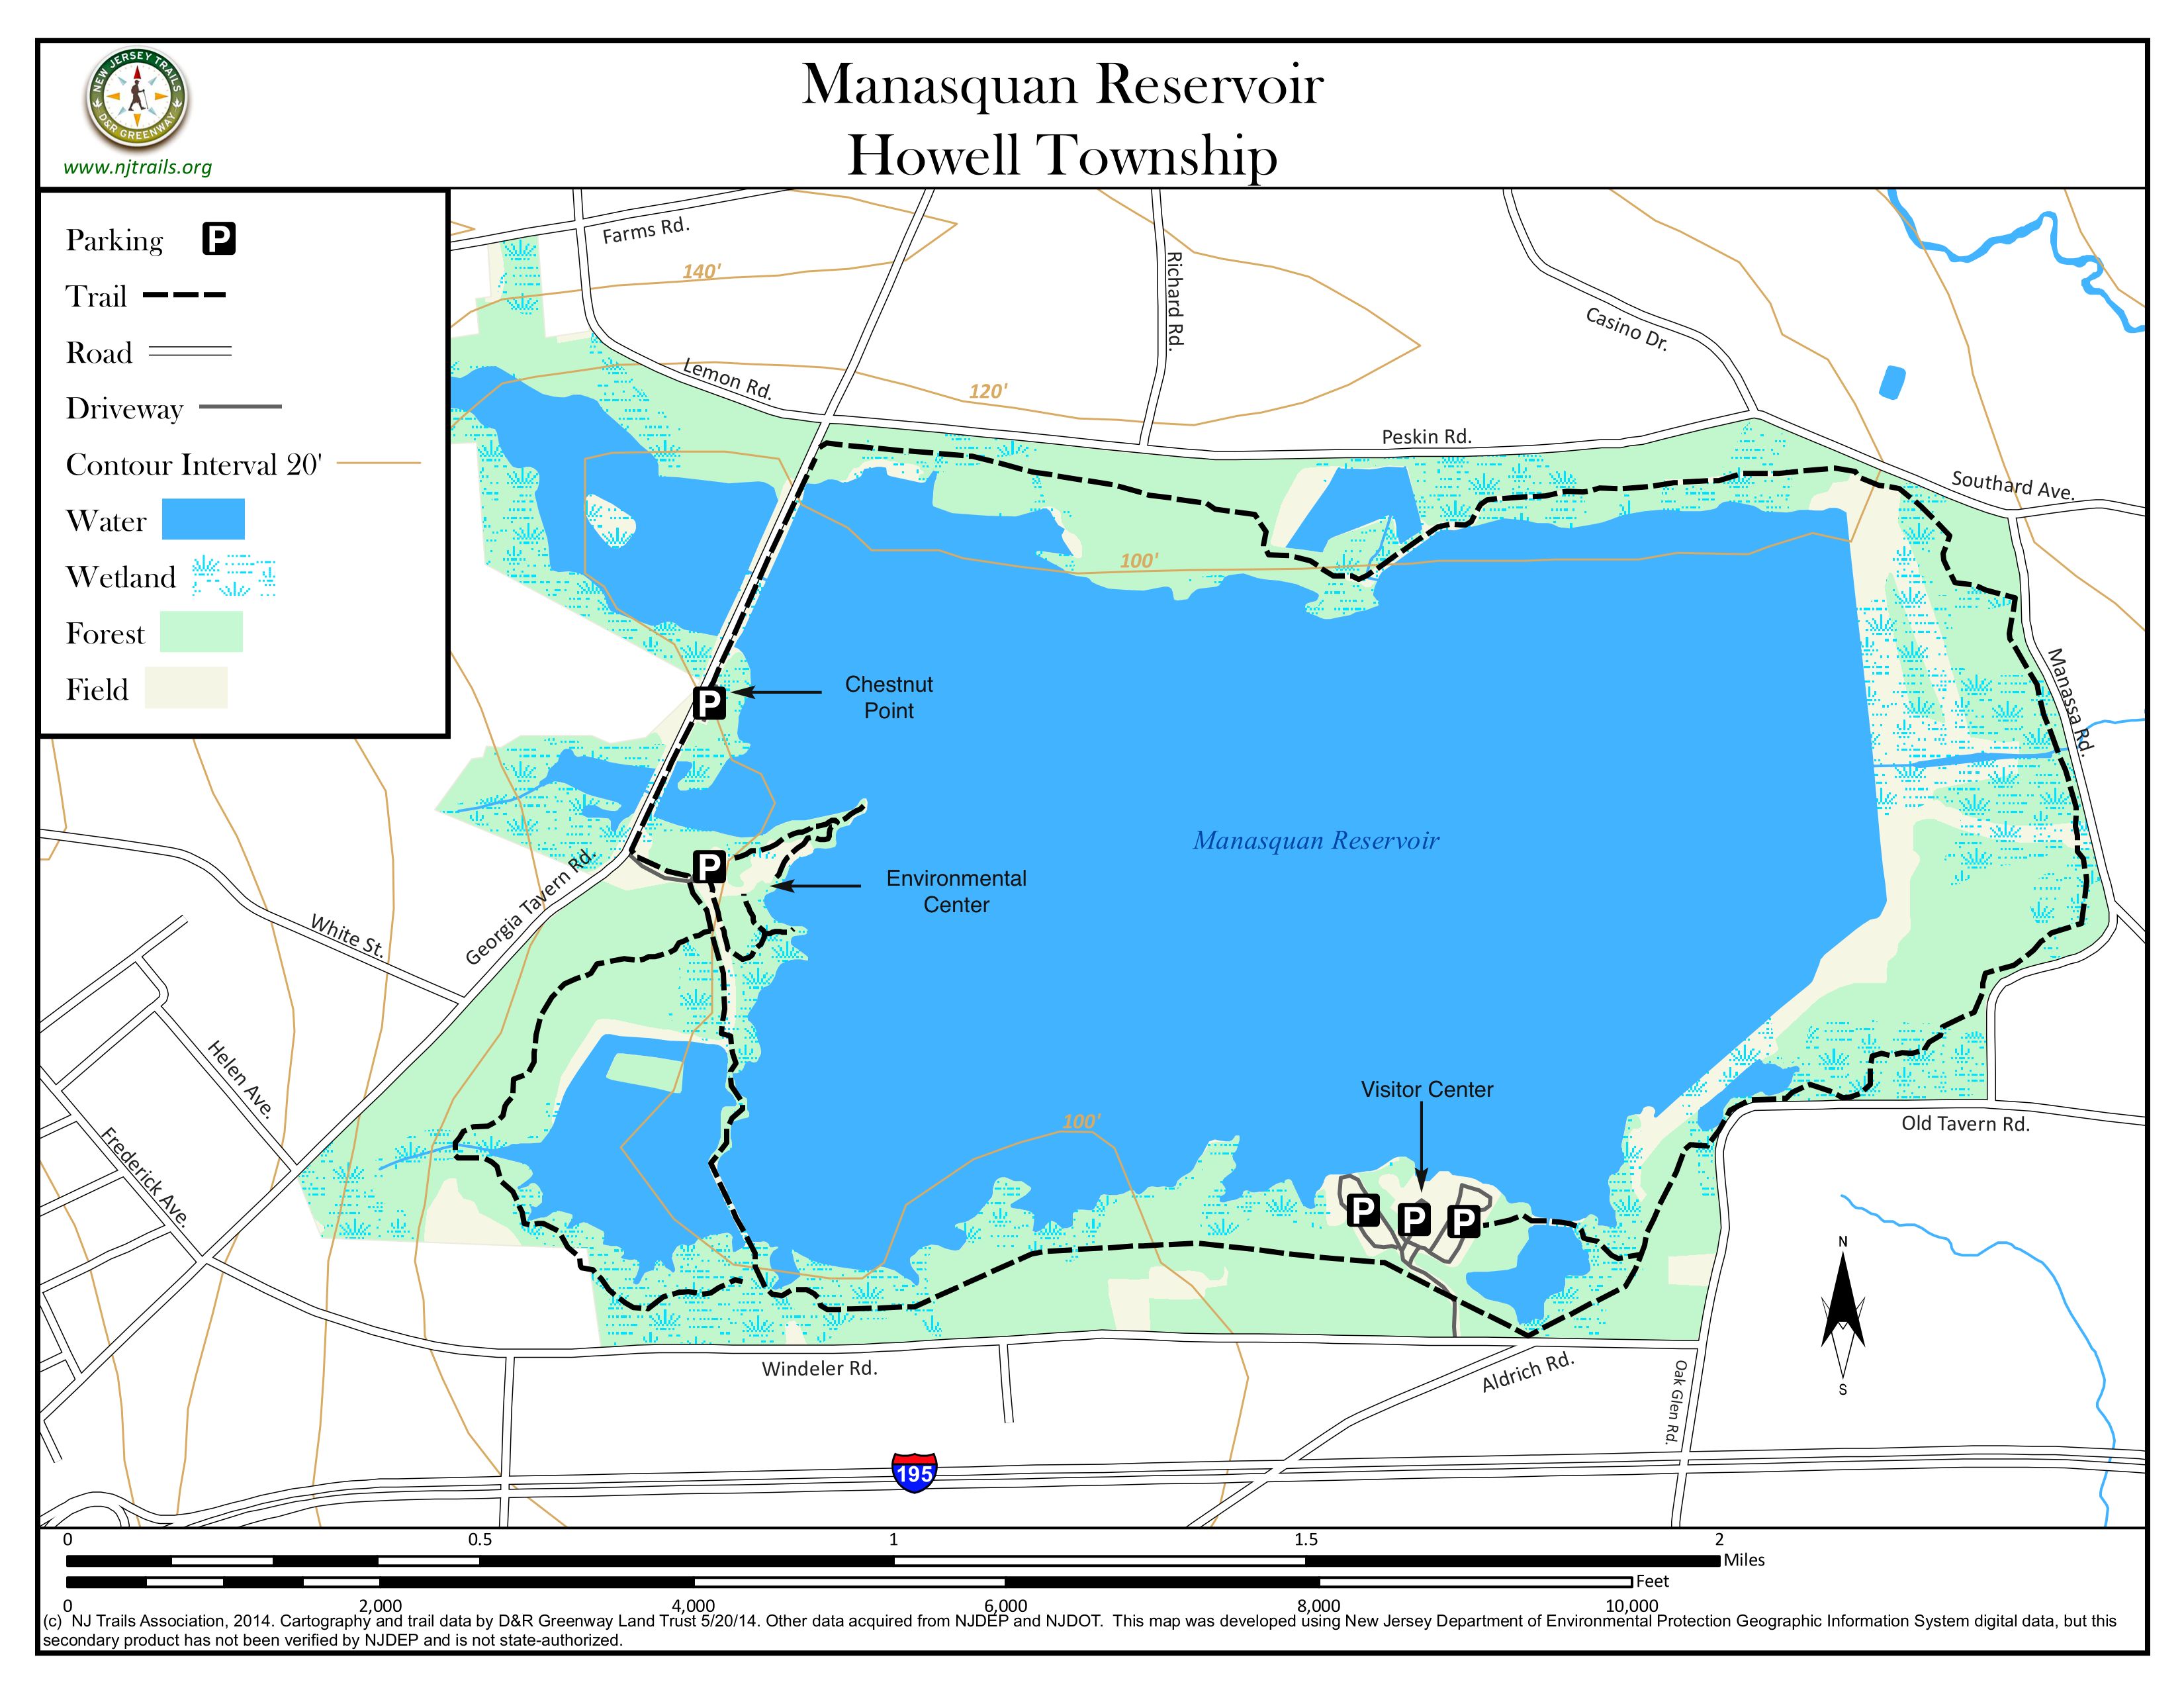 Manasquan-Reservoir.jpg